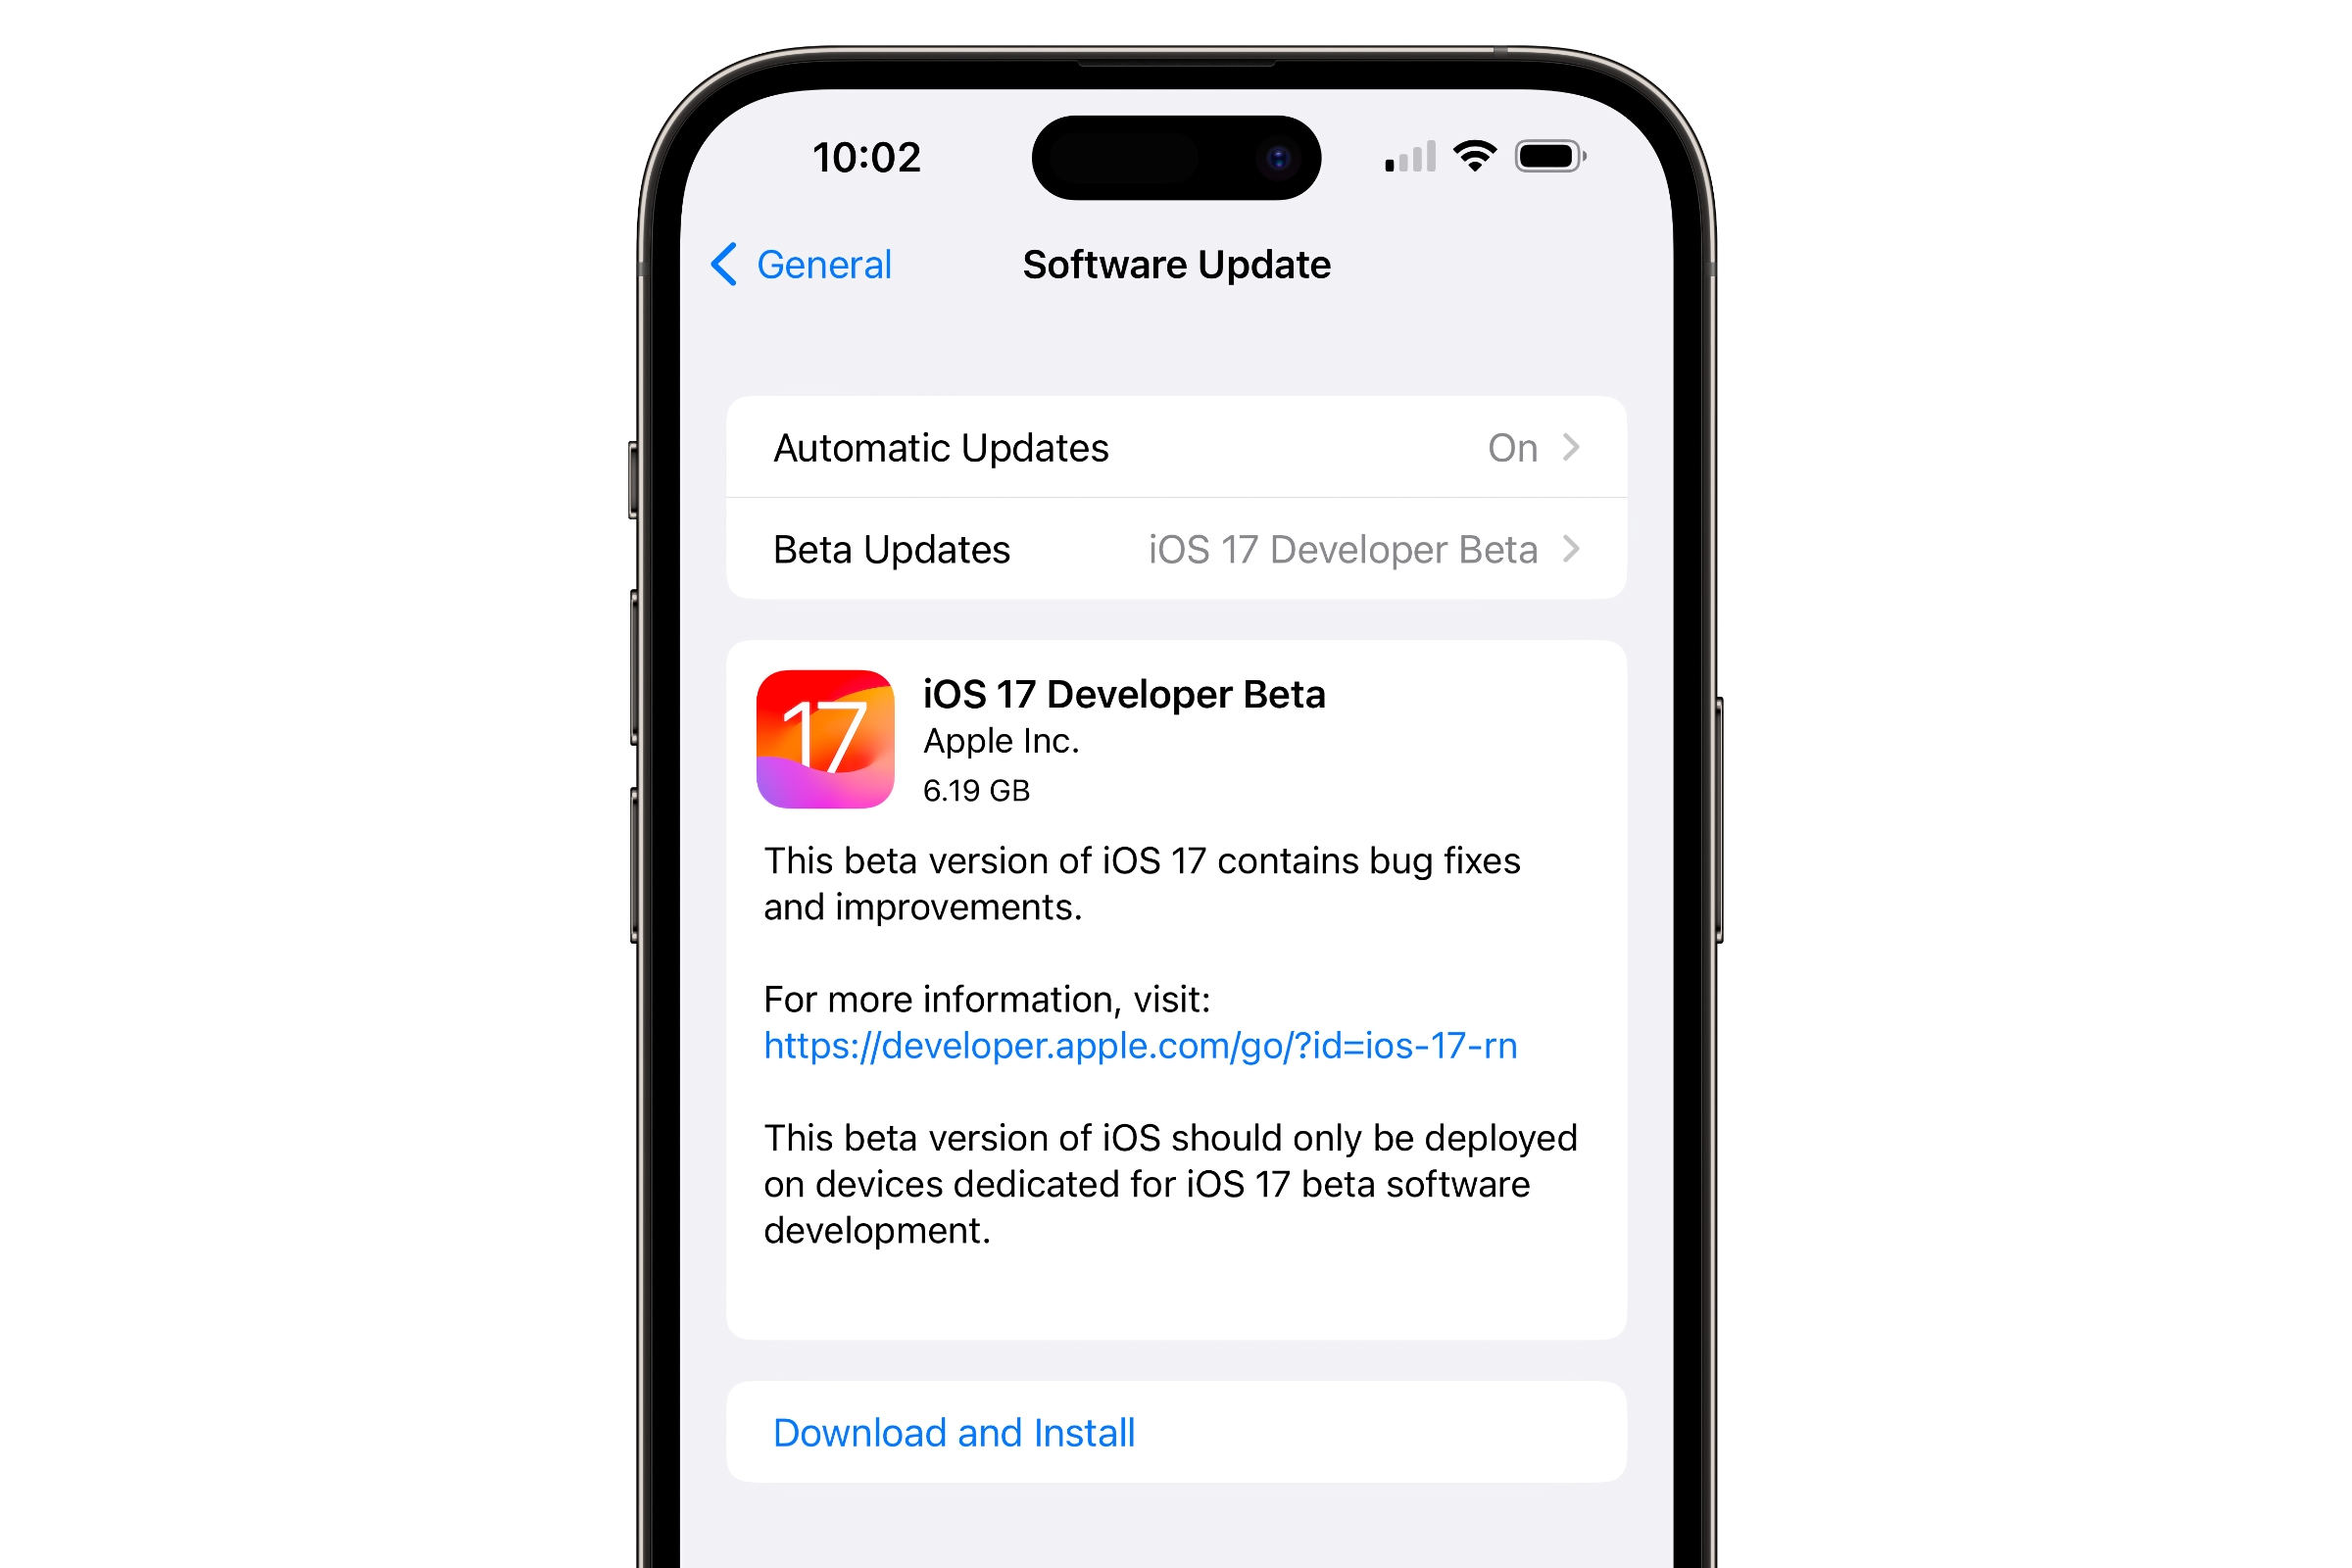 Auf dem iPhone wird der Download- und Installationsbildschirm für iOS 17 Developer Beta 1 angezeigt. 